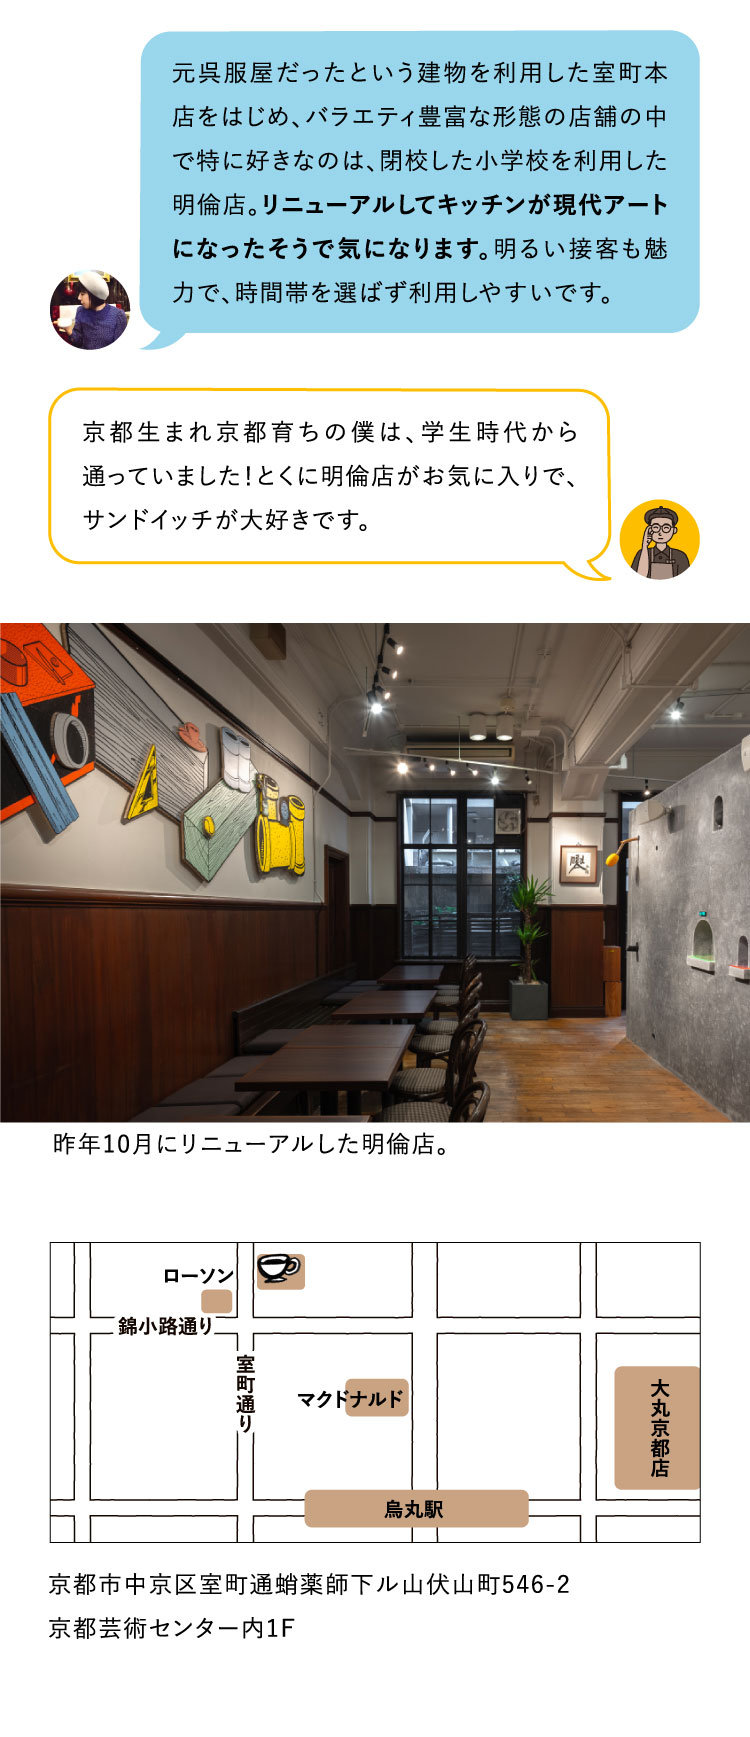 1971年創業、今年50周年の「前田珈琲」は、京都に11店舗を展開する、関西を代表する喫茶店。こだわりの自家焙煎は、ドイツ製のロースターとミルを使い、創業時から変わらないハンドドリップで抽出。フードやスイーツもすべて手作りです。写真は室町本店。
焼き&ゆで玉子サンド（6切れ／1人前） 810円